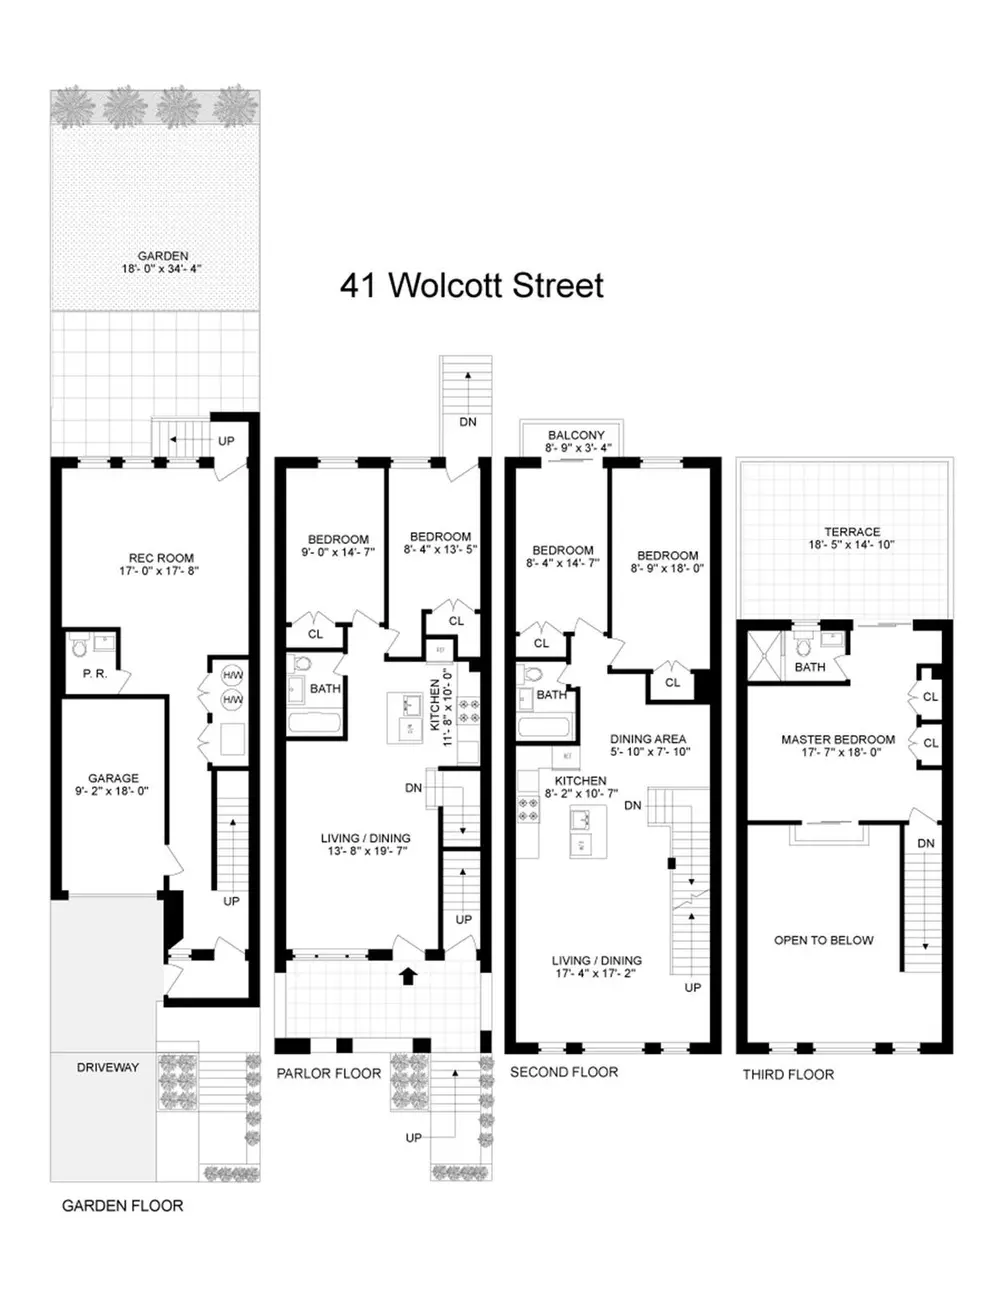 41 Wolcott Street floor plan